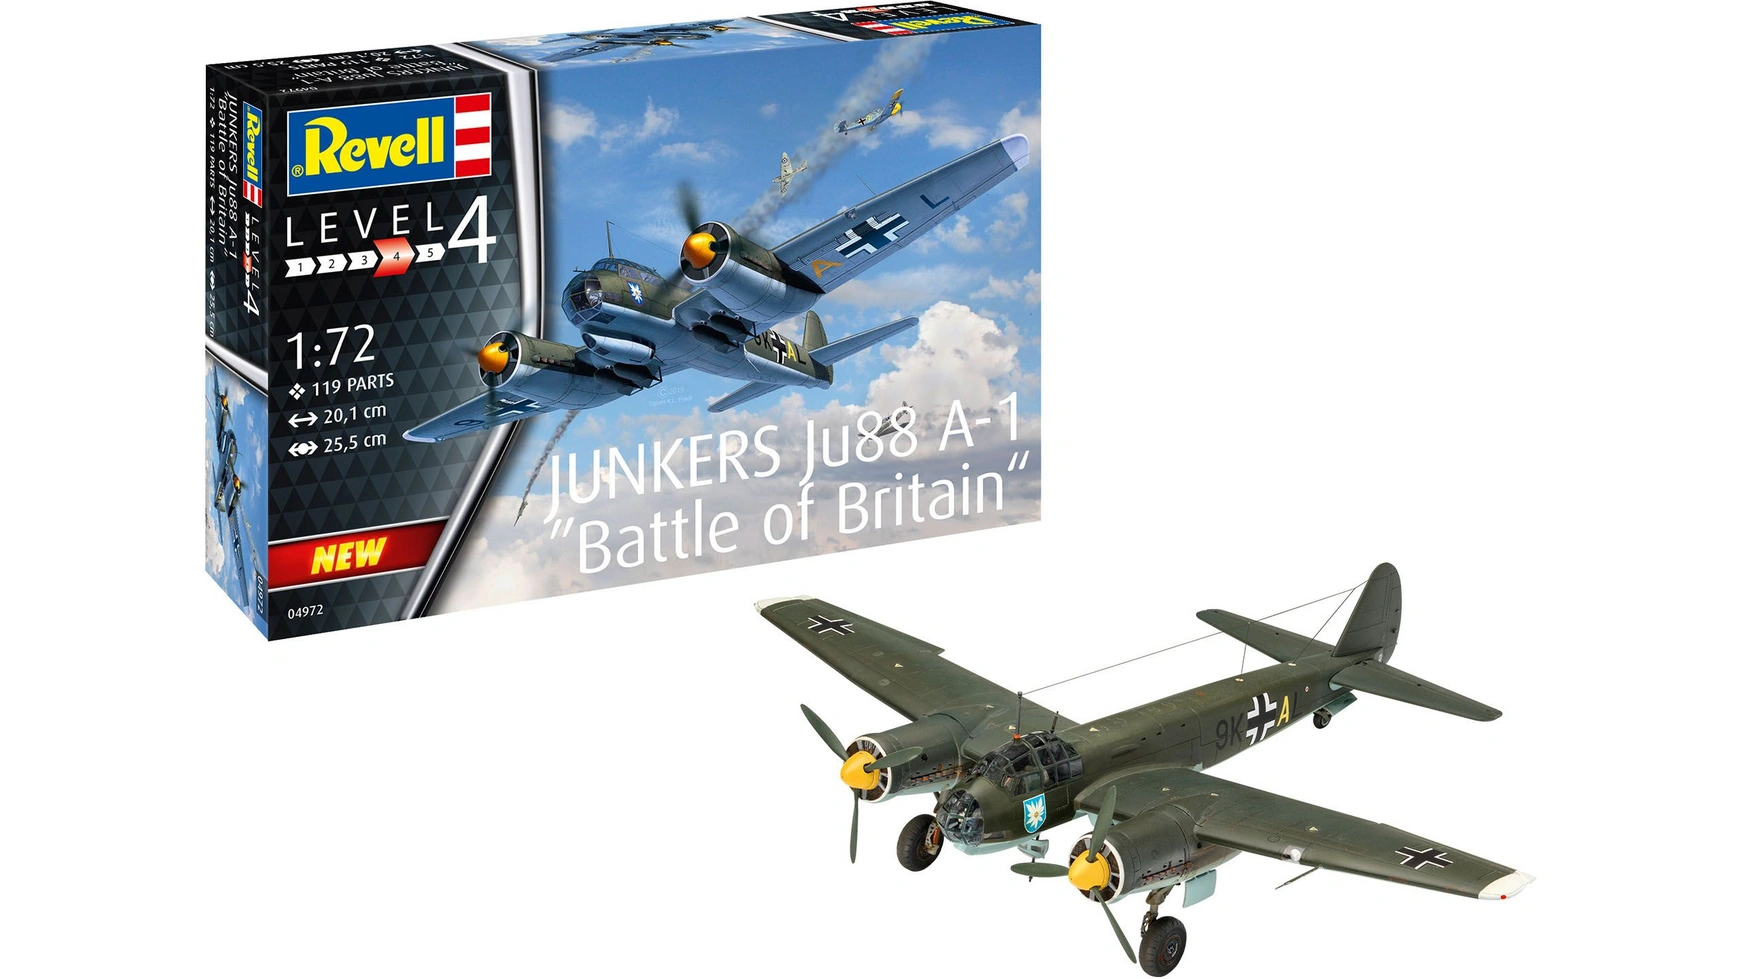 Revell Junkers Ju 88 A-1 Битва за Британию revell junkers f 13 03870 1 72